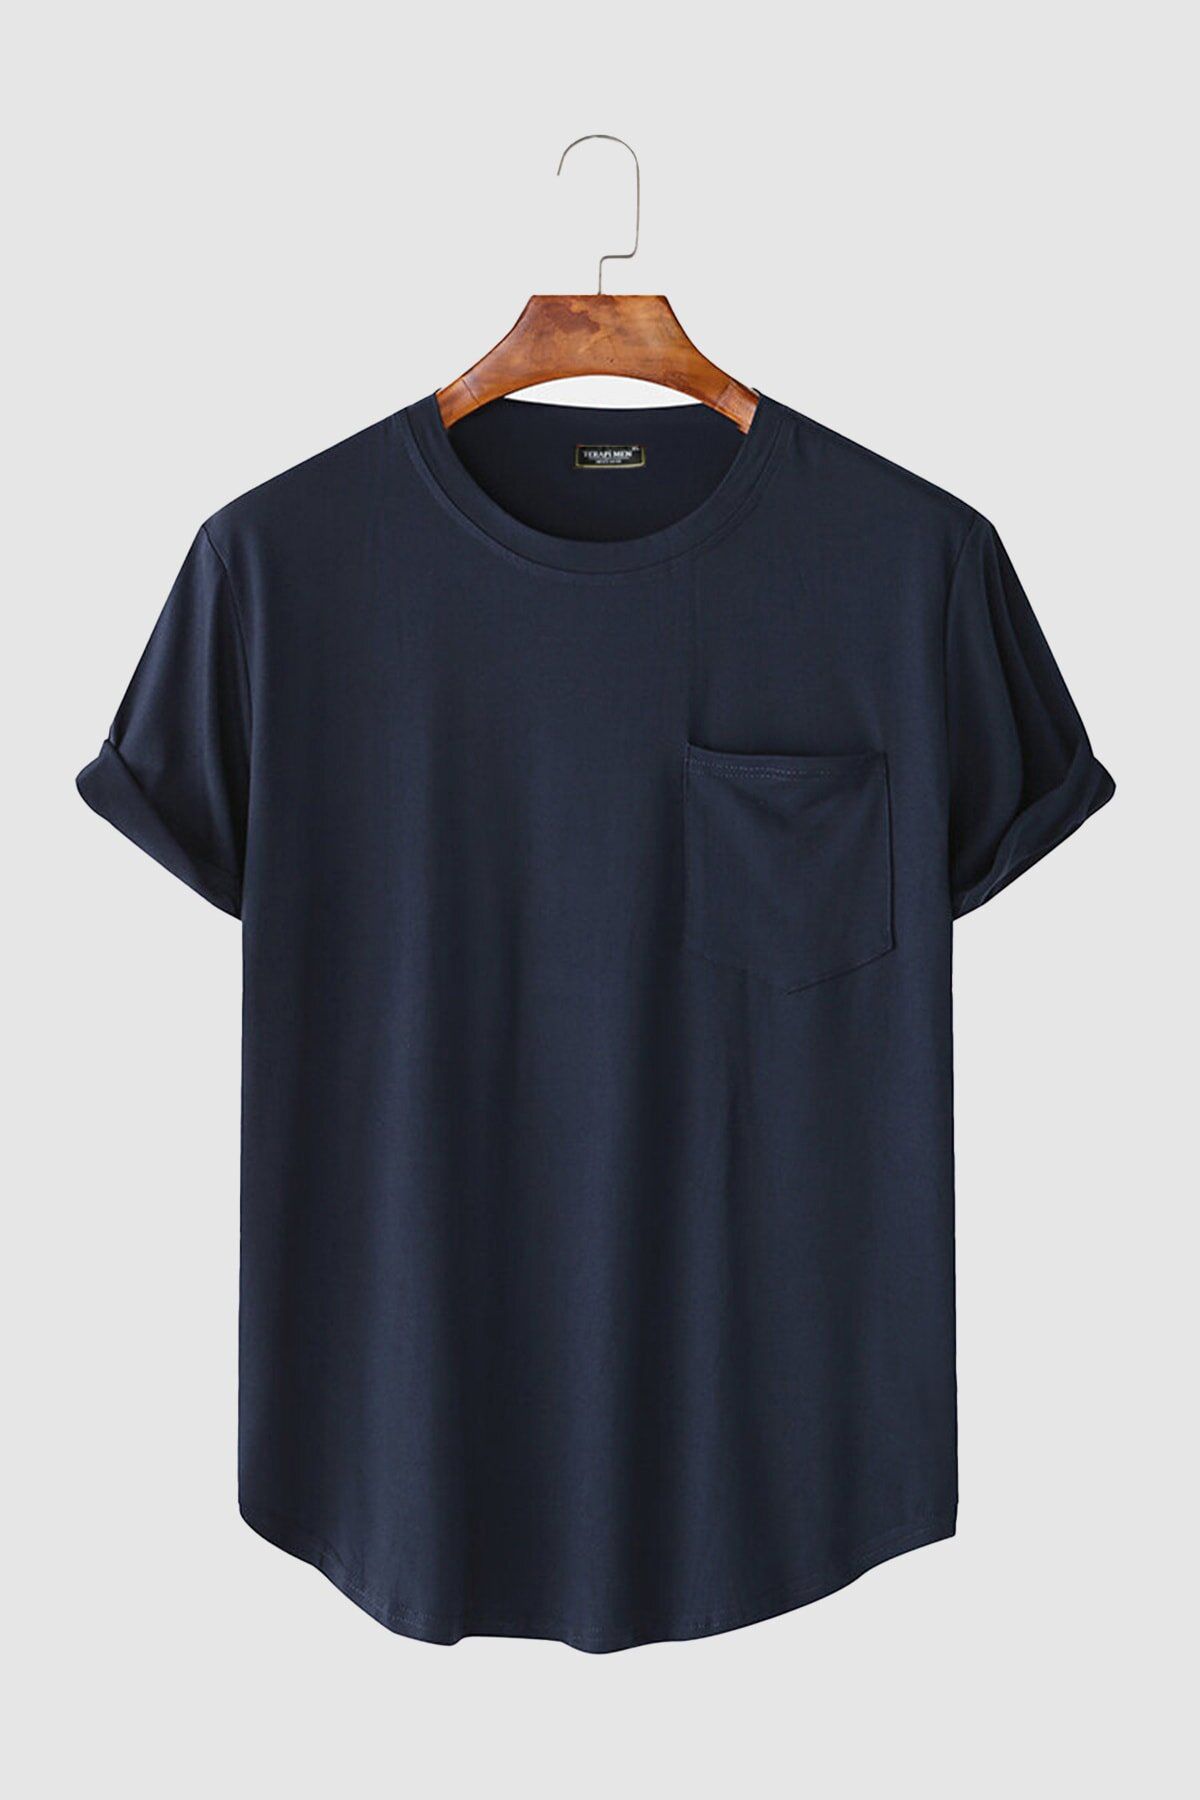 VEAVEN Erkek Yuvarlak Yaka Oval Kesim Cepli Basic T-shirt Stk306-0000001-1-4 Lacivert